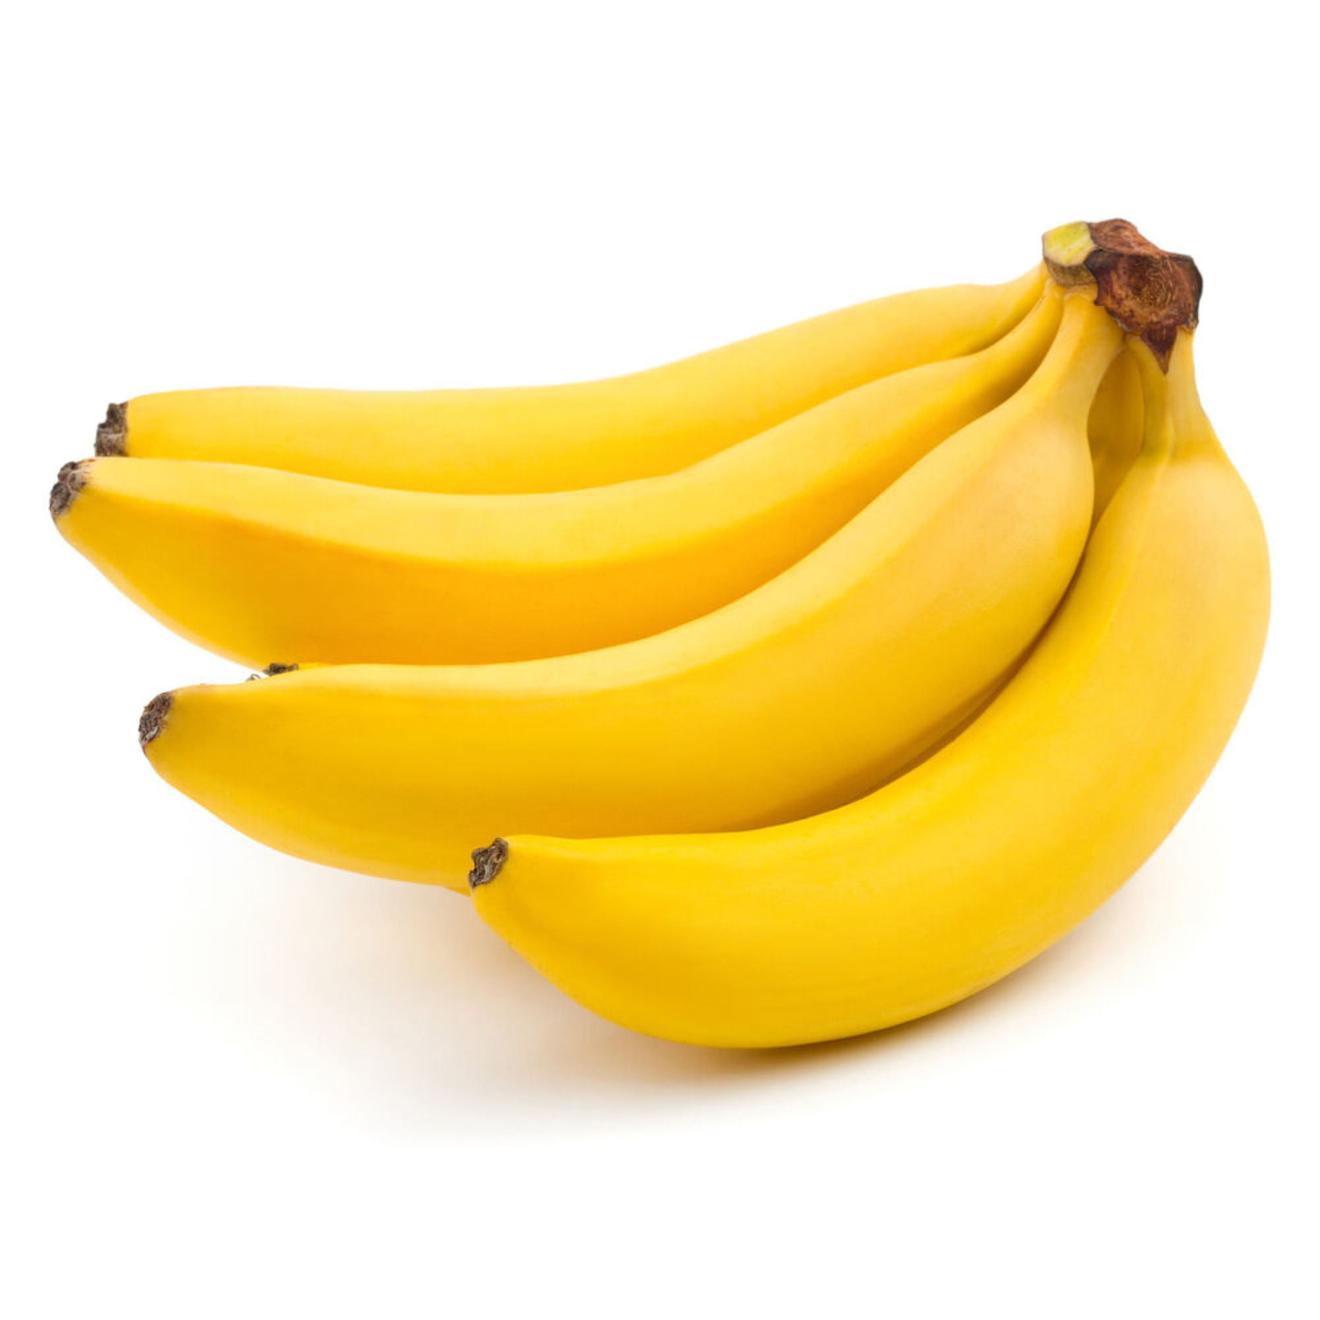 Oferta de Banana seleccion x kg. por $1999 en Carrefour